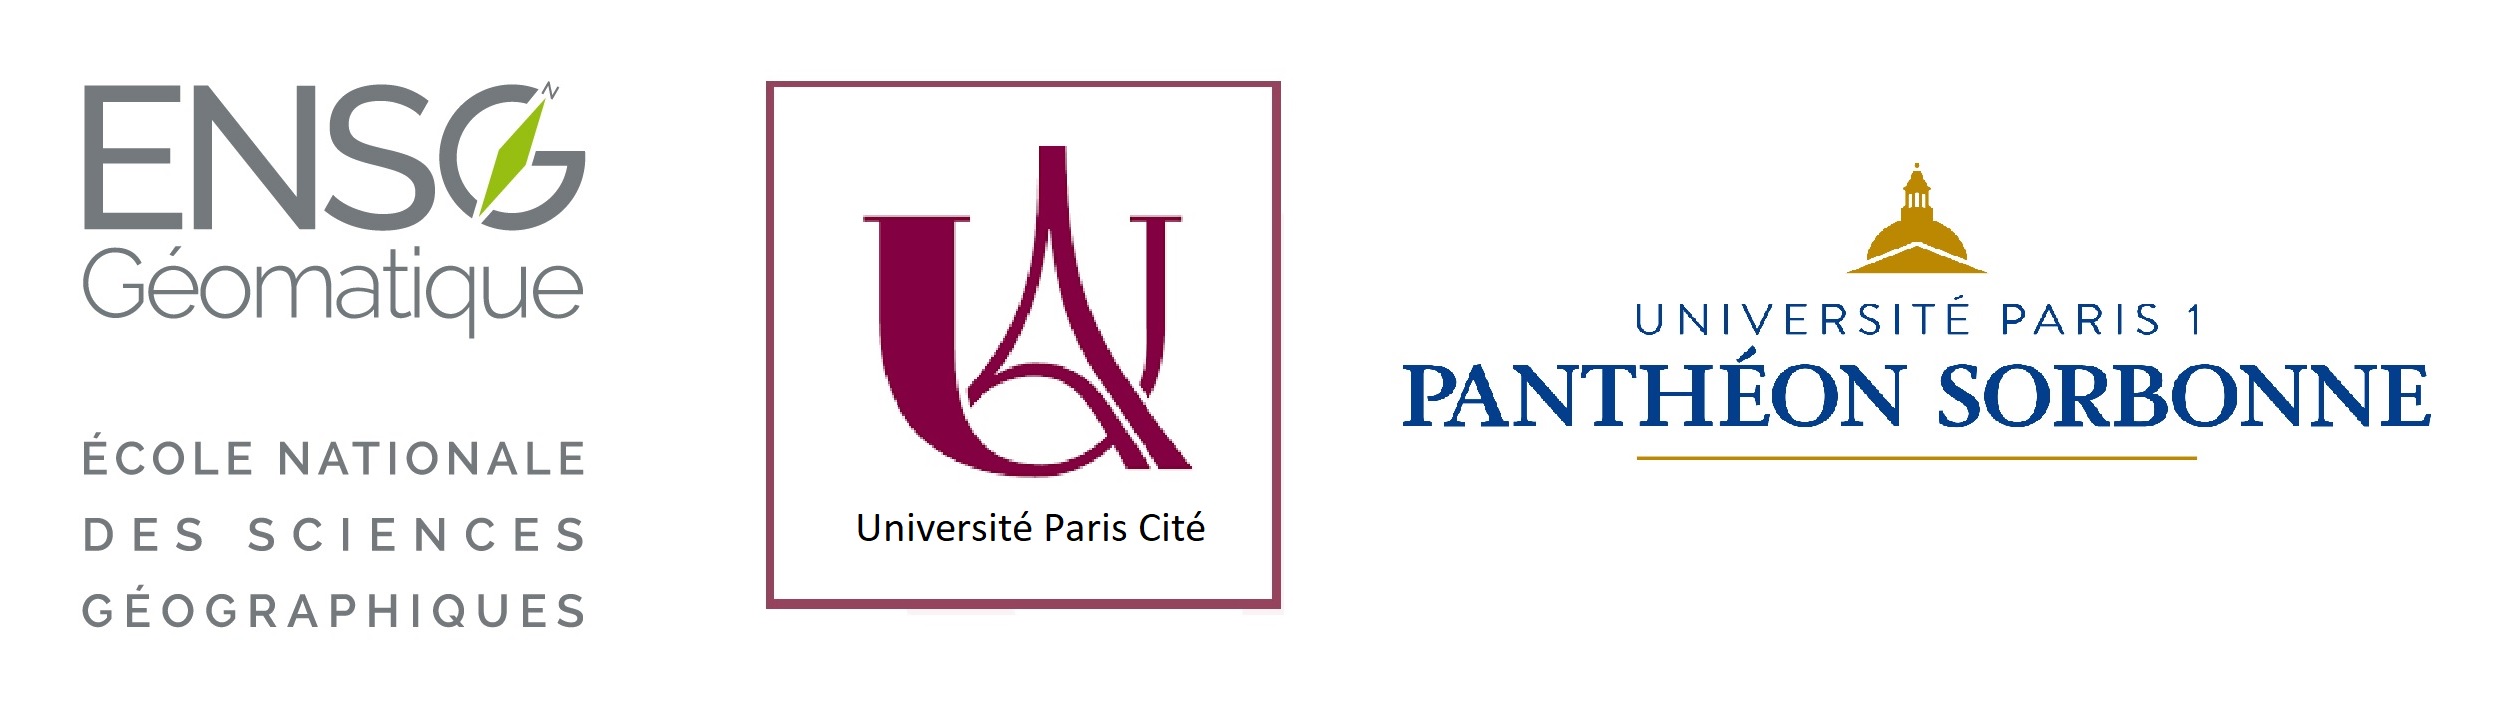 logos ENSG - Université Paris Cité - Université Paris 1